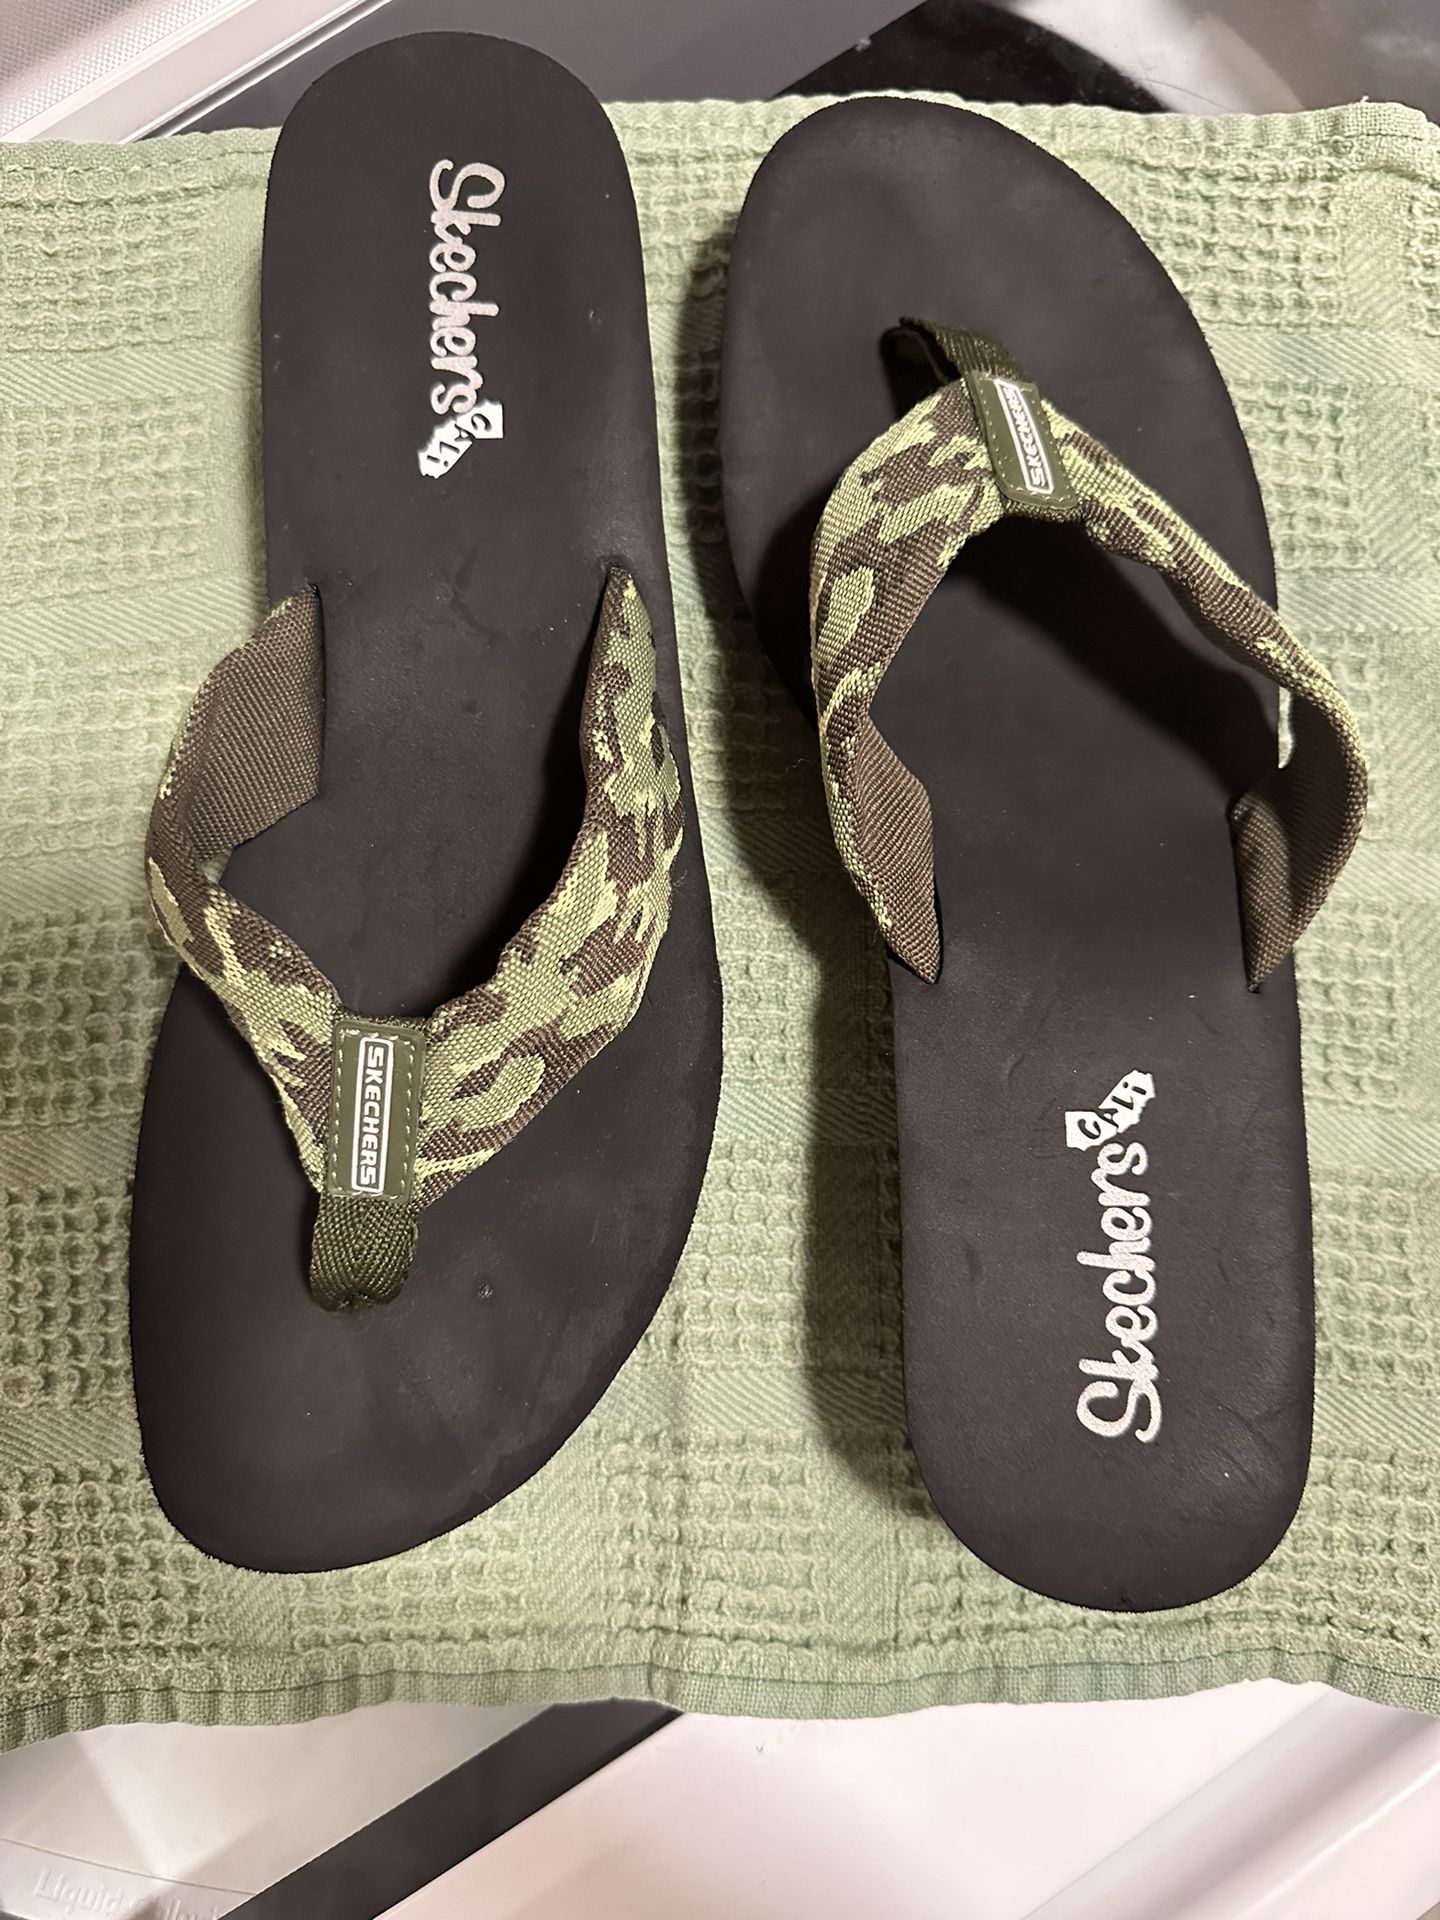 Skechers Cali Sandals Wedge Heel, woman's size 9. EUC